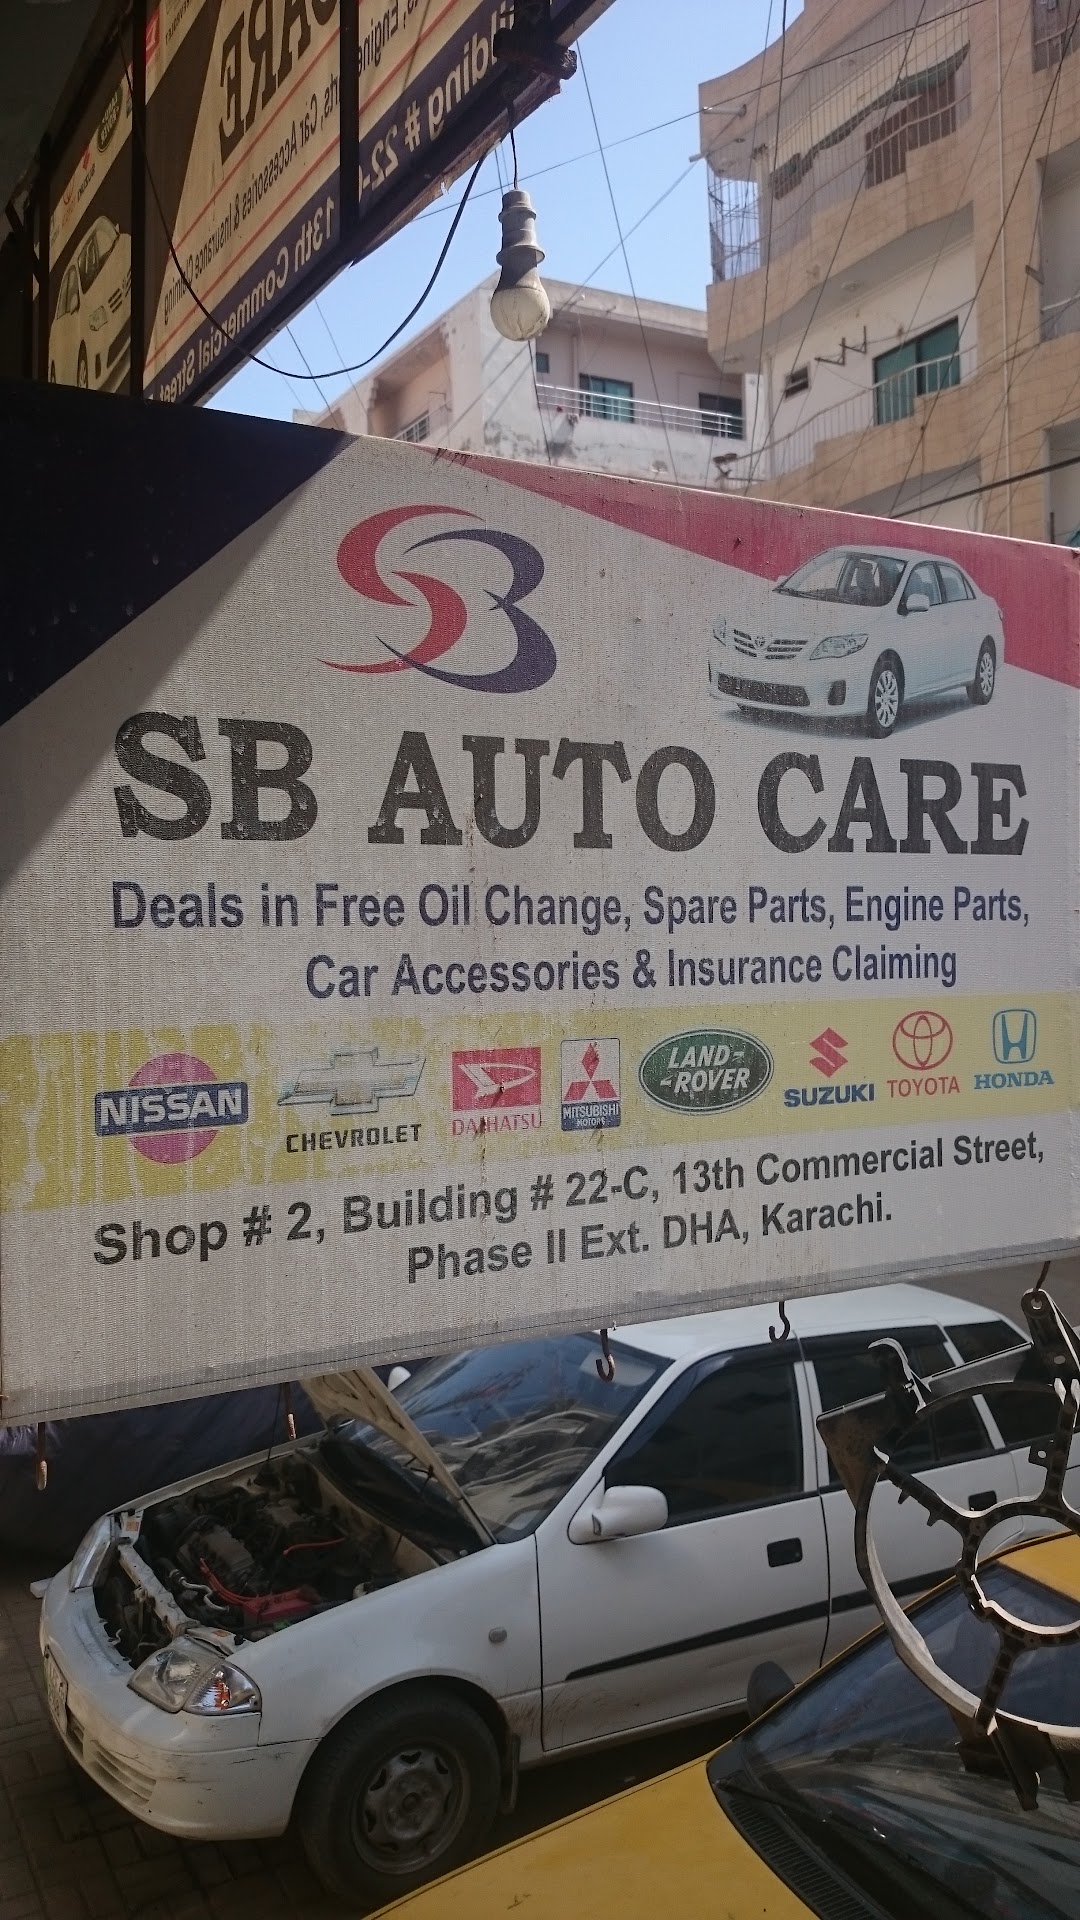 S.B Auto Care